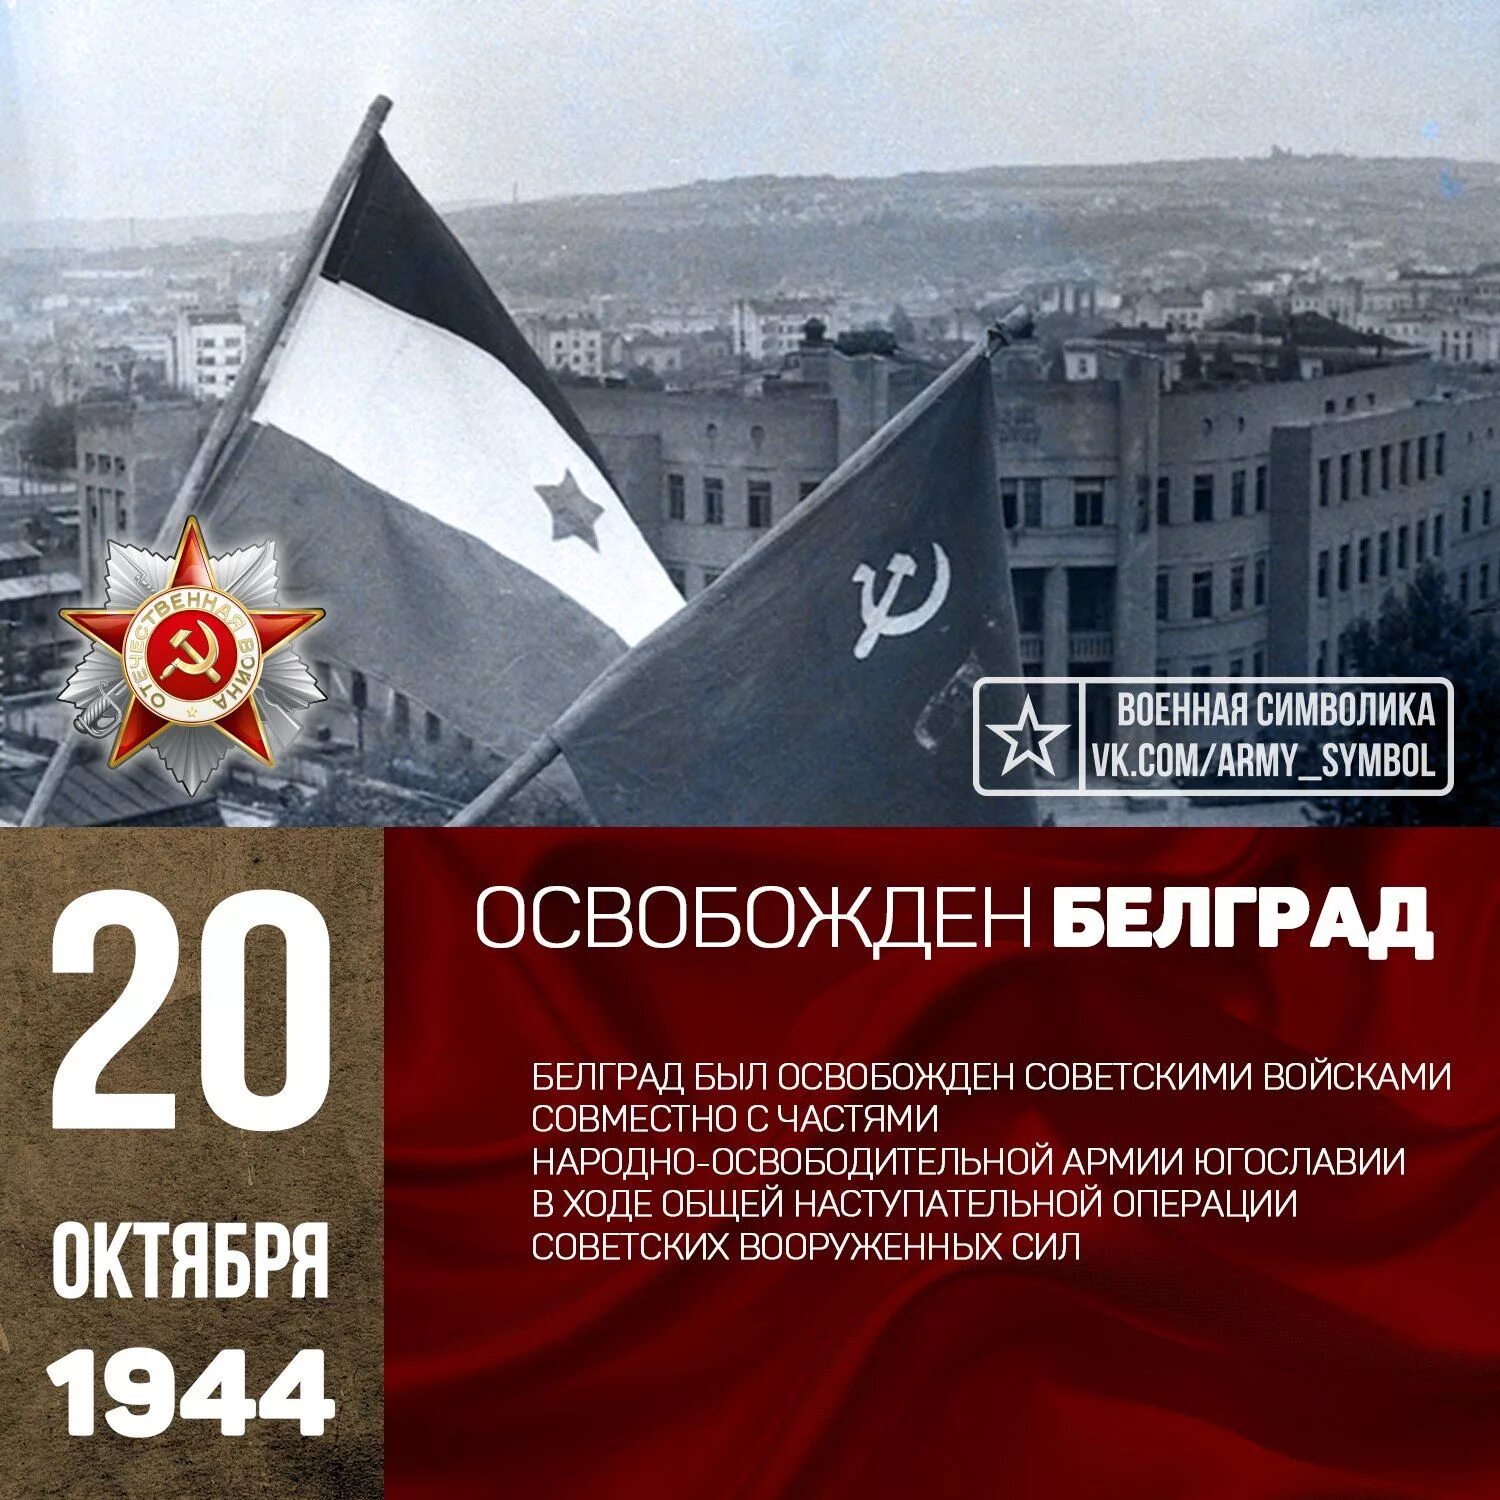 20 октября 2019 год. Освобождение Югославии 1944 операция. Освобождение Белграда, октябрь 1944 года. 20 Октября день освобождения Белграда. Советские войска освободили Белград.